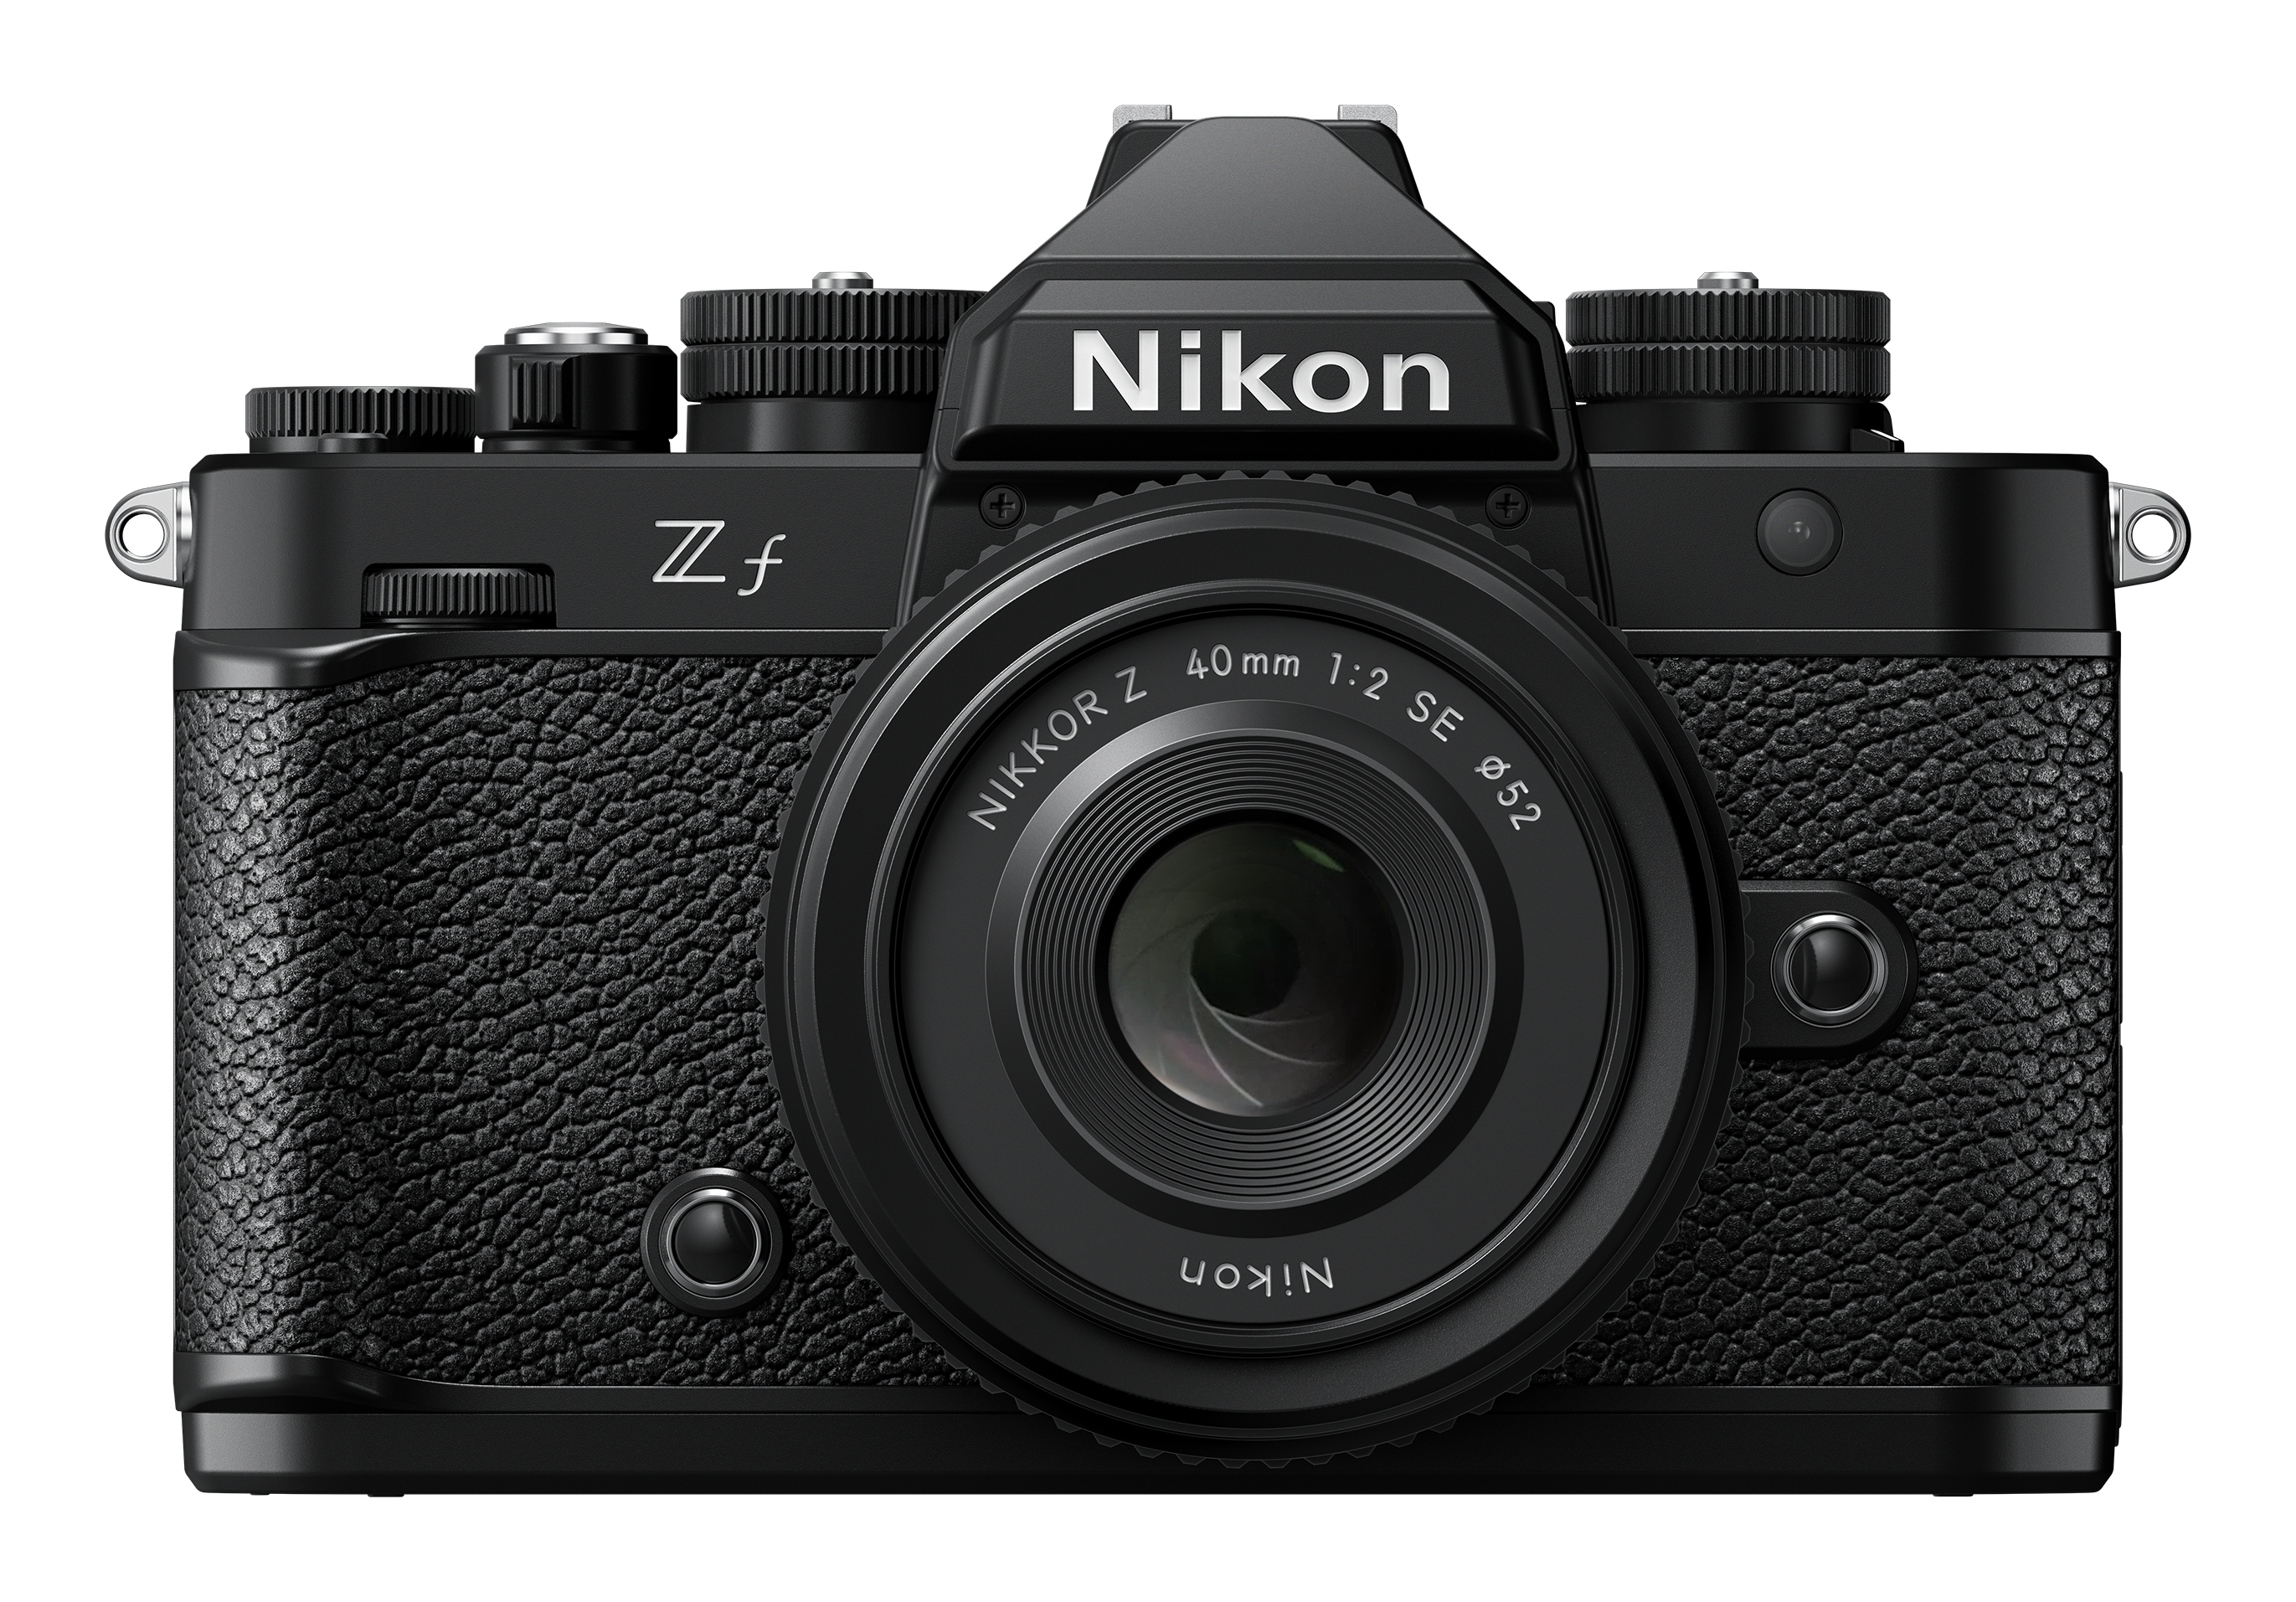 Nikon ZF + 24-70MM F4 SD 128GB 667 Pro -Gar. Nital 4 anni - Cine Sud è 48 anni sul mercato! NMZ595